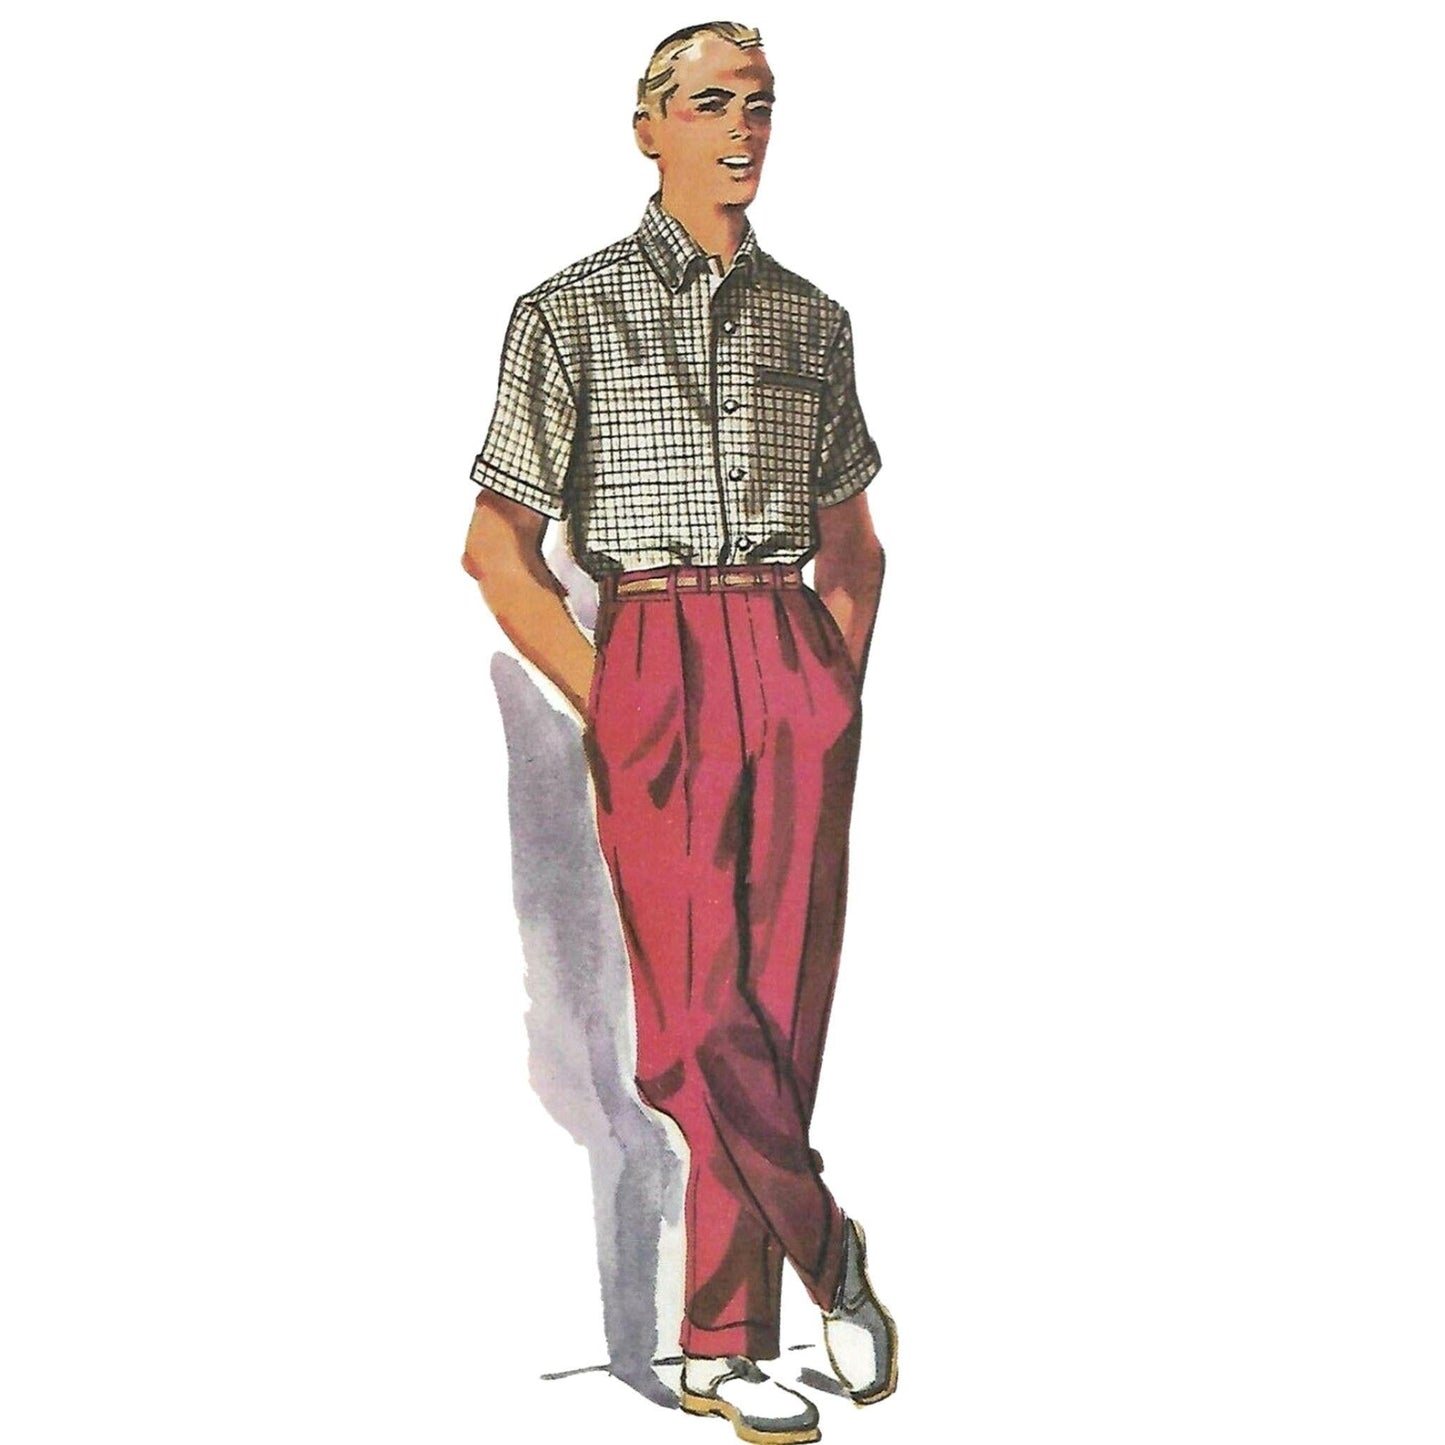 Man wearing shirts and slacks